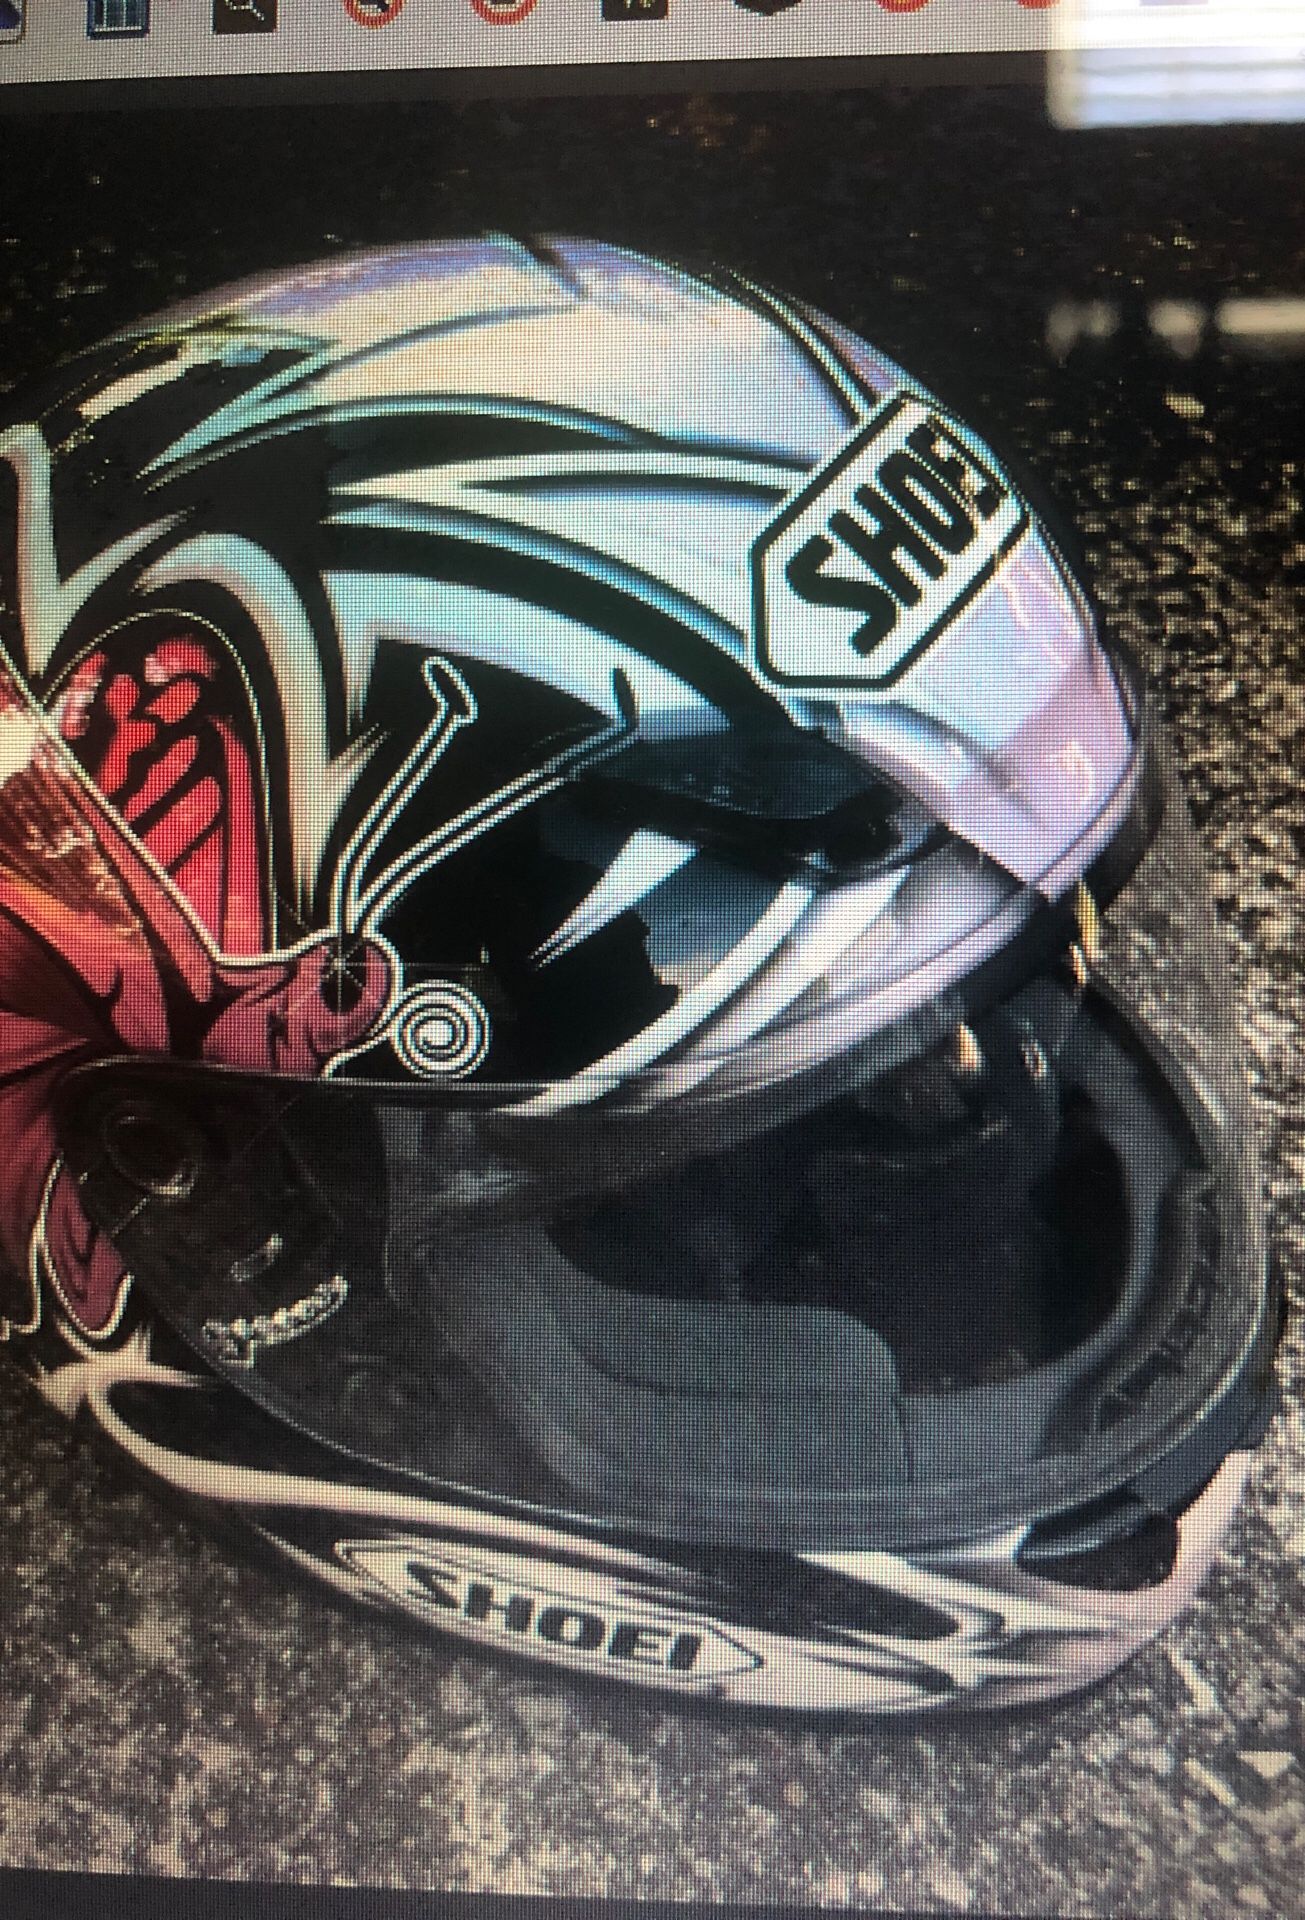 Shoei Motorcycle Helmet